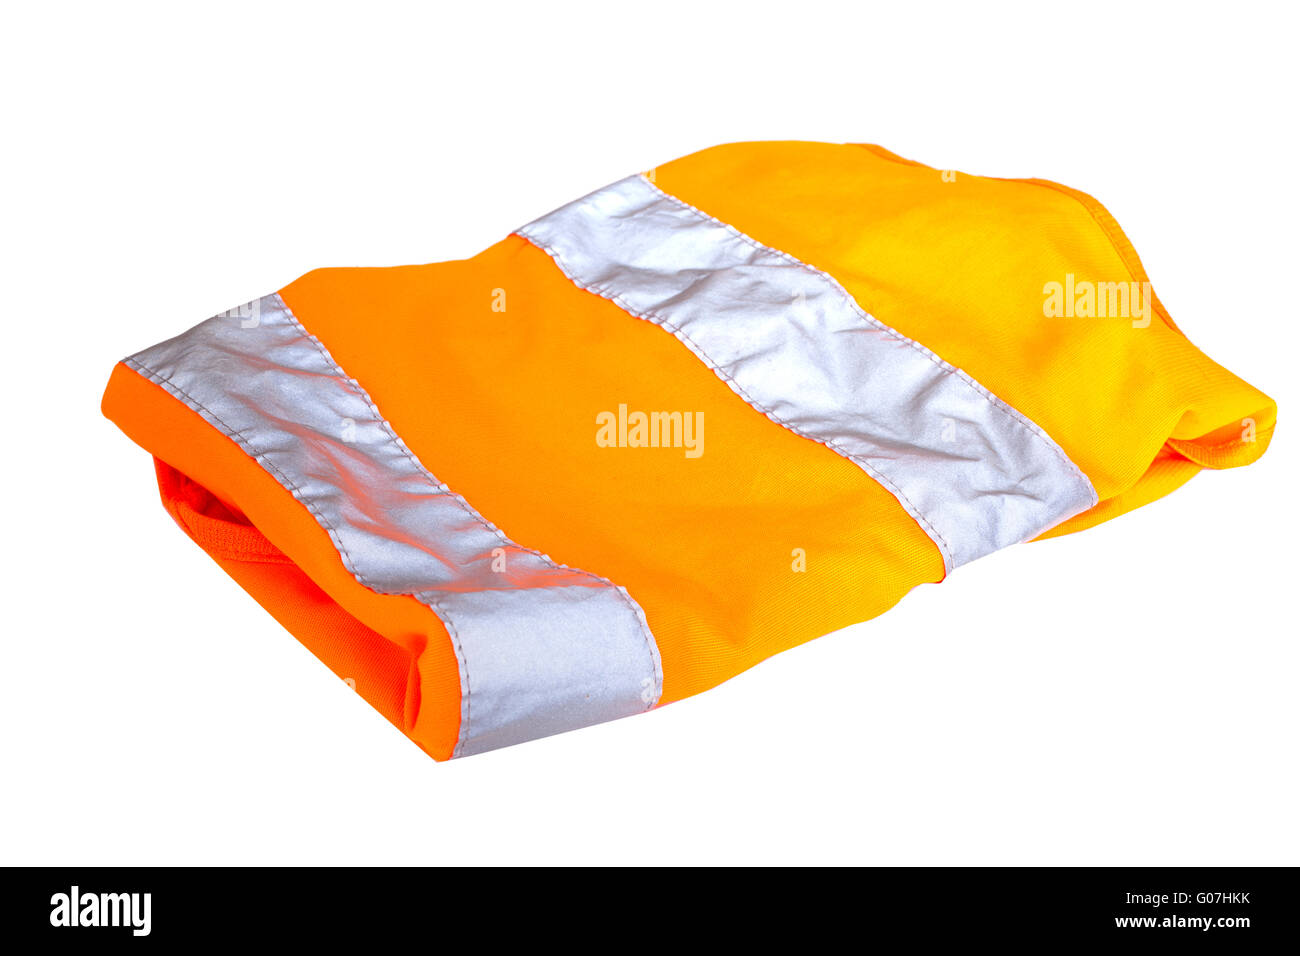 Orange safety vest isolated on white background Stock Photo